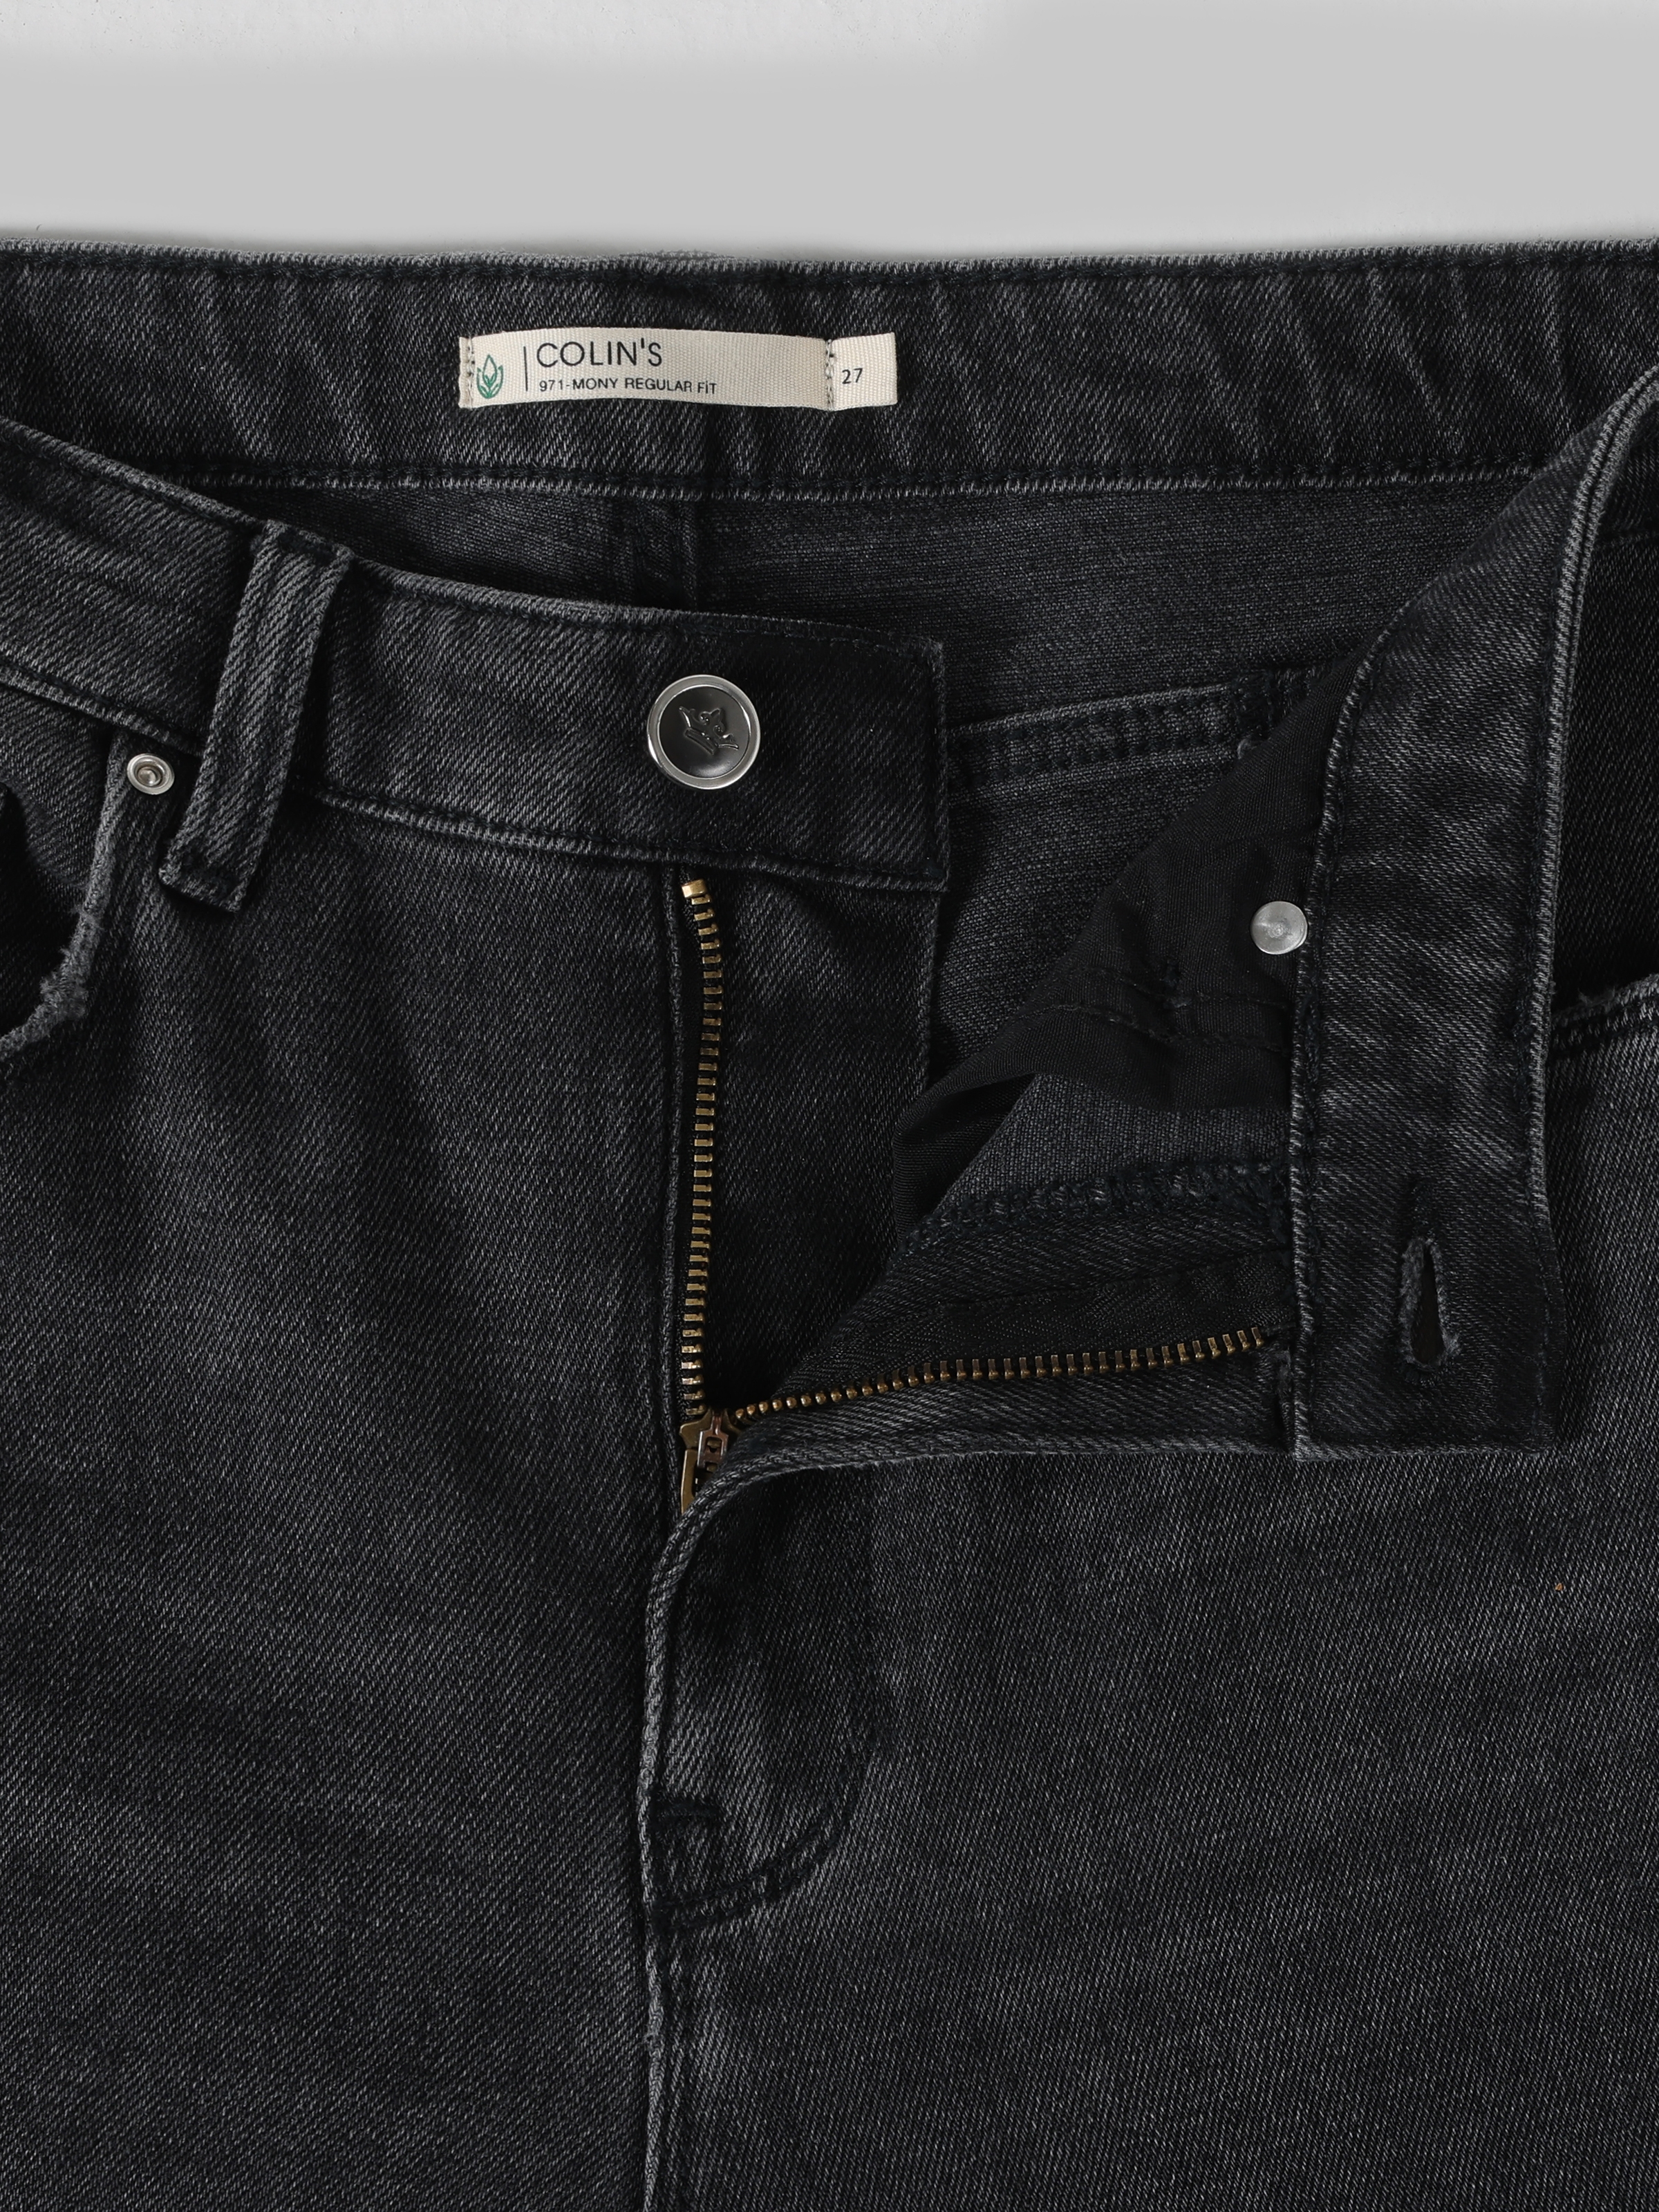 Afficher les détails de 971 Mony Coupe Régulière Taille Normale Jambe Élargie Pantalon En Jean Noir Pour Femme